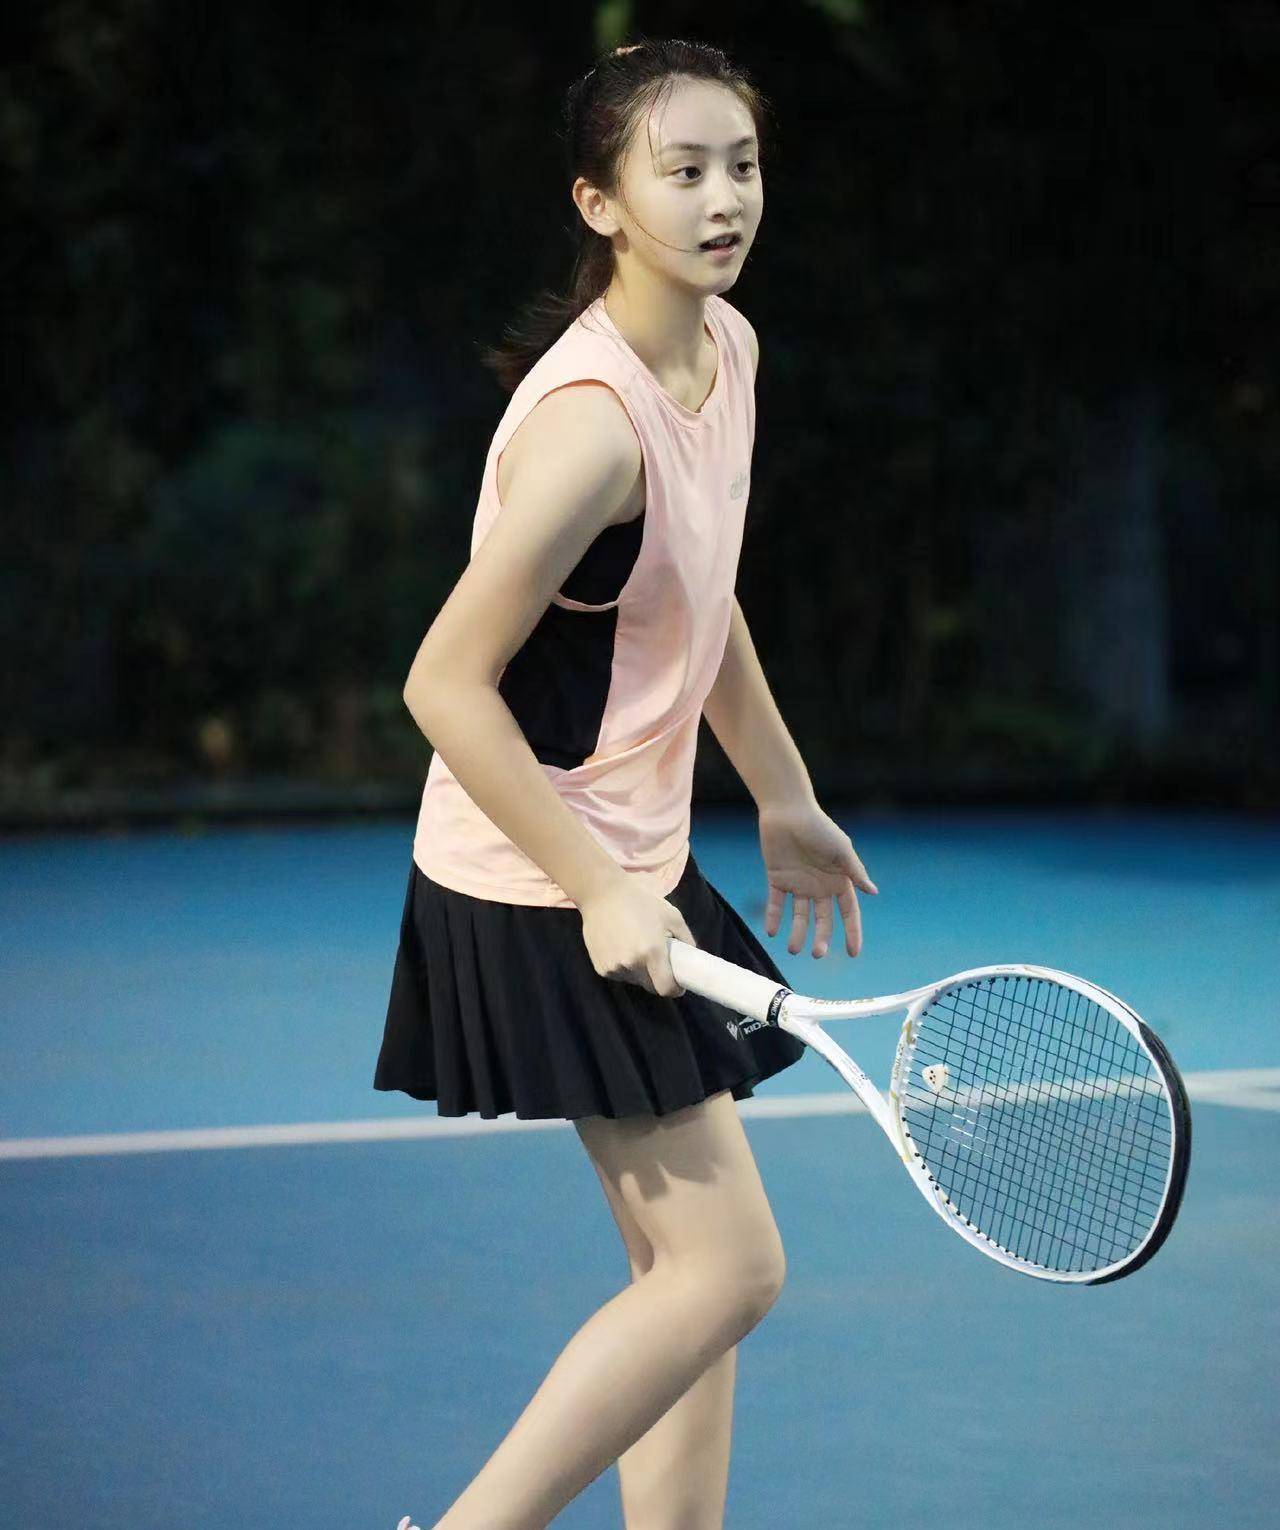 田亮女儿田雨橙参加网球专业赛,开启了星二代比拼时代